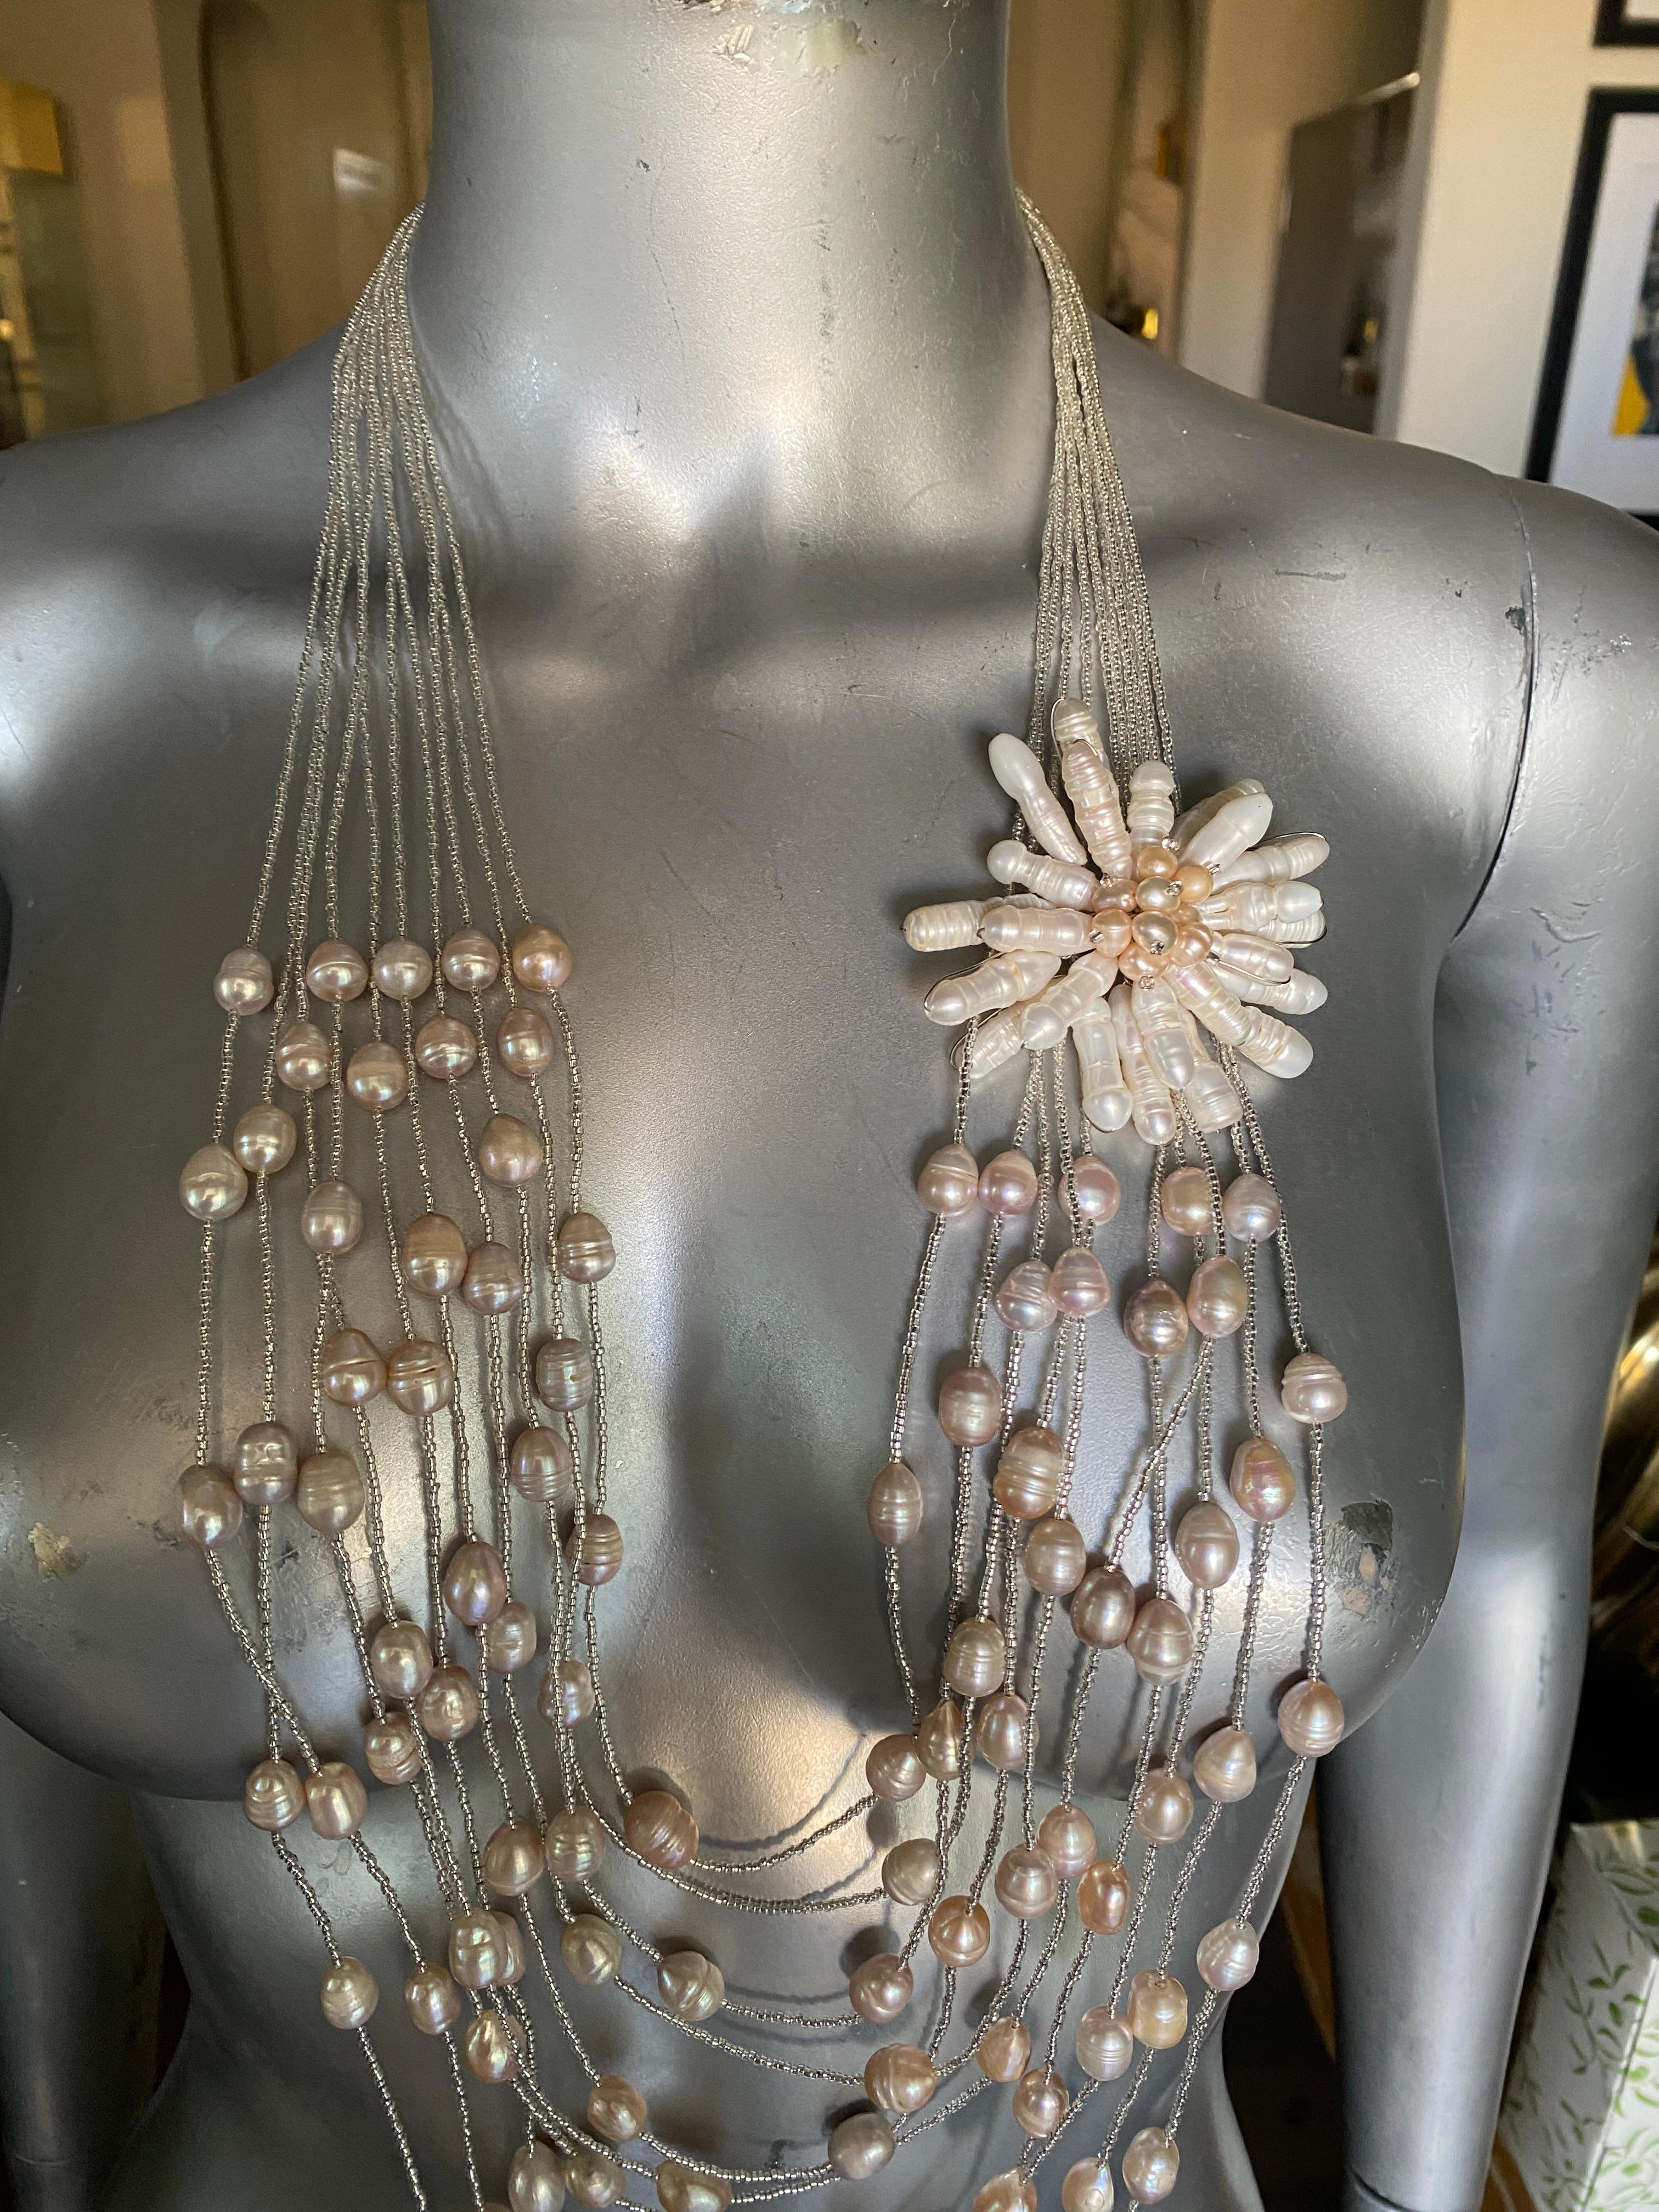 Eine der meist kommentierten Halsketten, die wir auf Instagram gepostet haben. Ein ausverkauftes Stück der italienischen Firma Ottaviani Bijoux. Eine 10-strängige Halskette aus silbernen Miniperlen, drapiert mit Perlen und Perlmuttperlen, mit